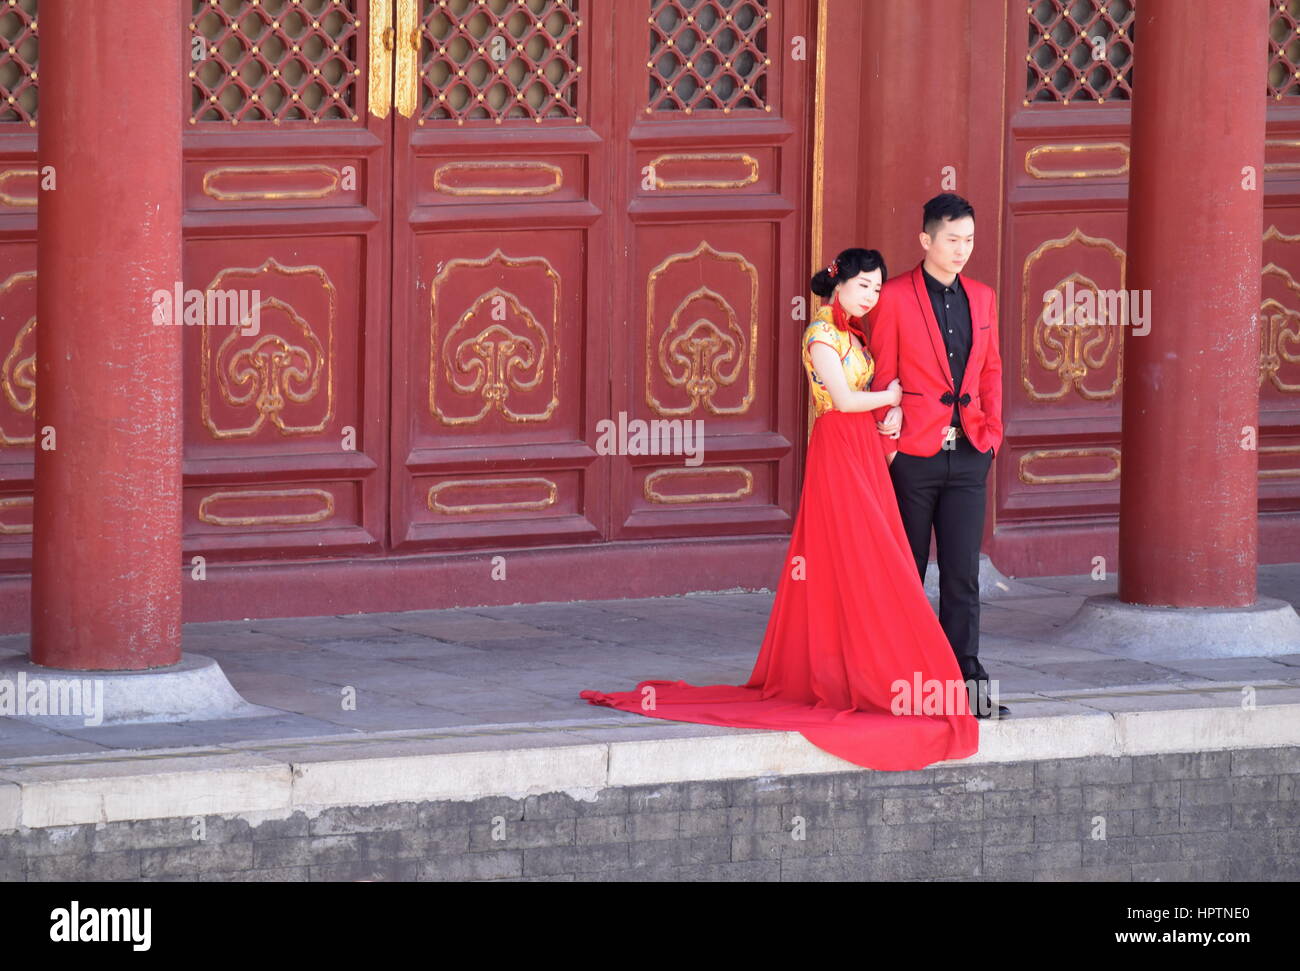 Ein chinesisches Ehepaar in Liebe nehmen Hochzeitsfotos an der Temple of Heaven, tragen rote, umgeben von roten traditioneller Architektur - Peking, China Stockfoto